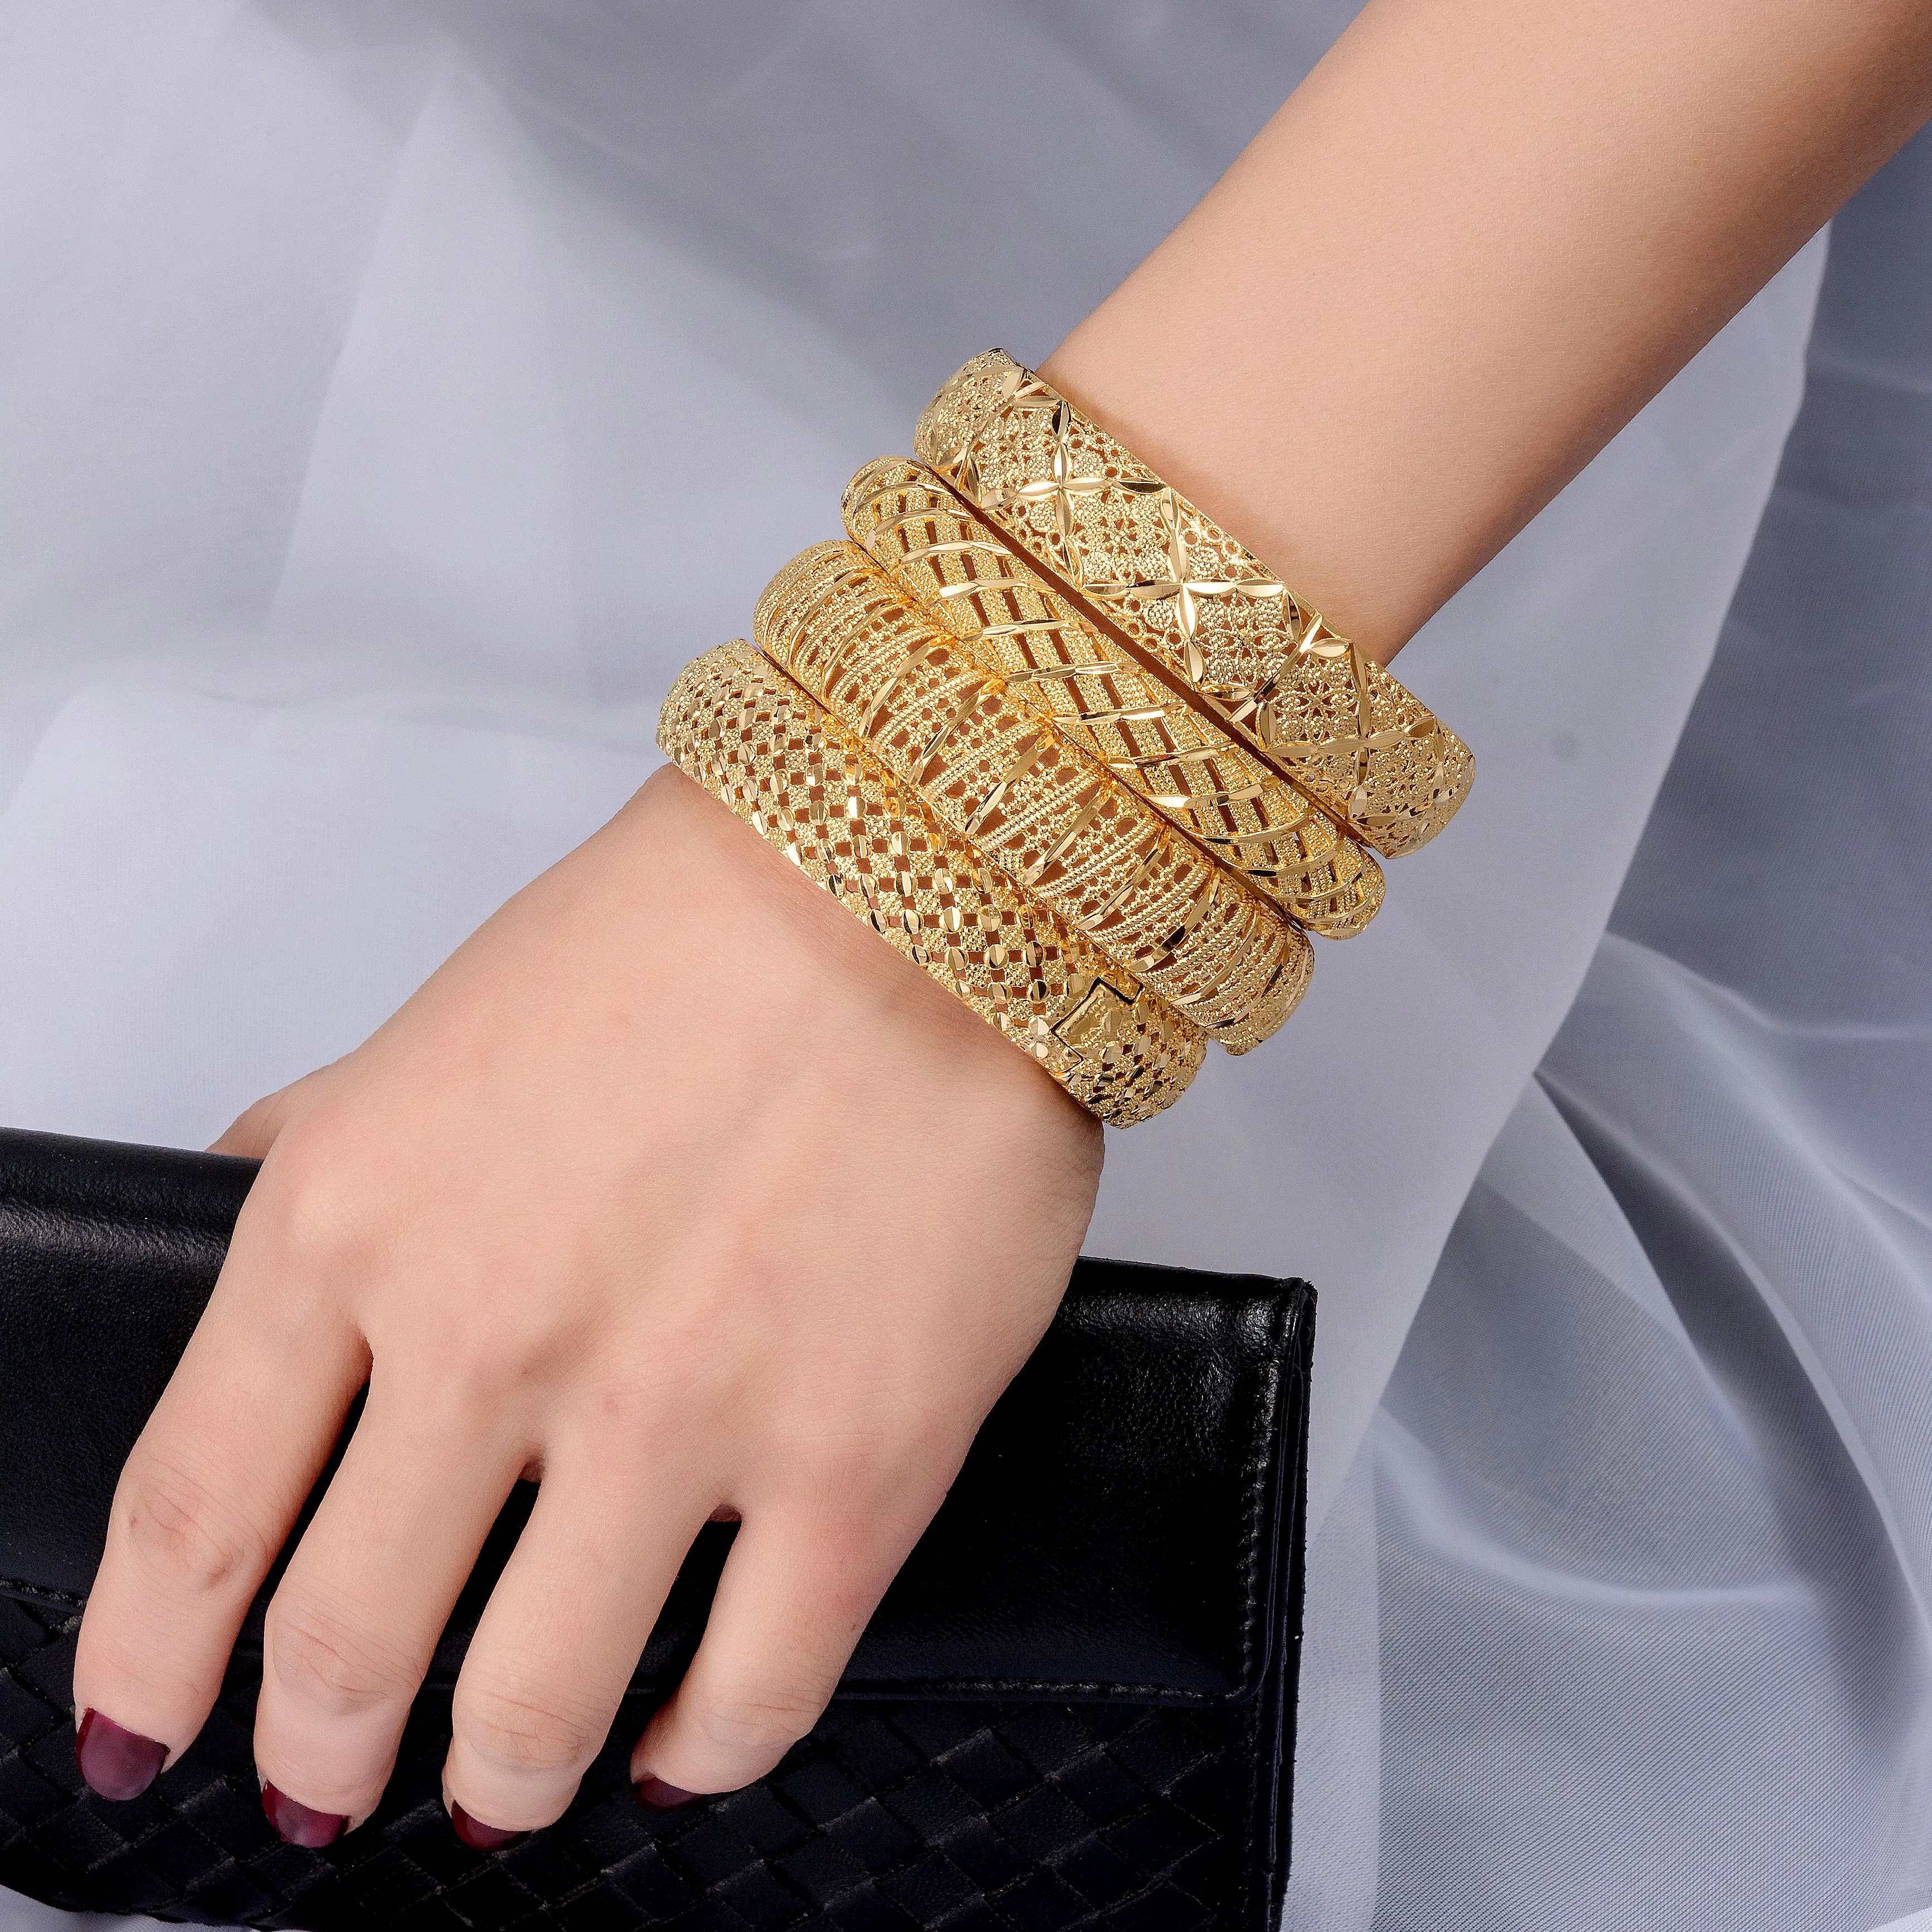 Wando Браслет-манжета и браслеты с арабским цветком золотого цвета для женщин и мужчин свадебных браслетов винтажная Этническая бижутерия